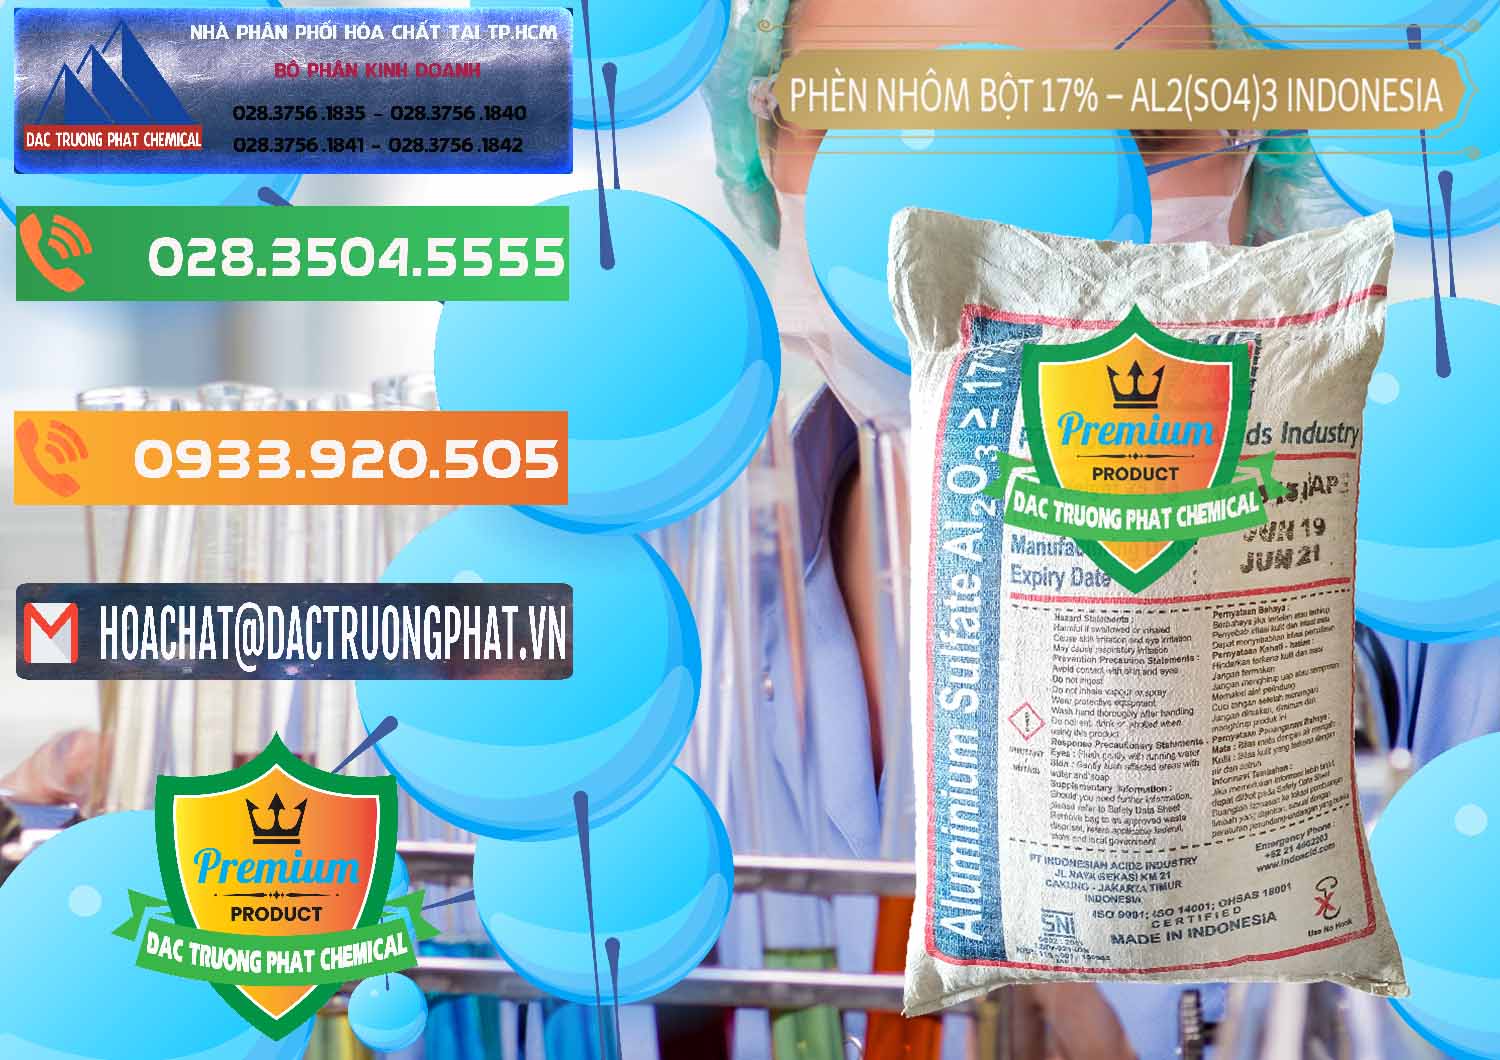 Nơi bán - cung cấp Phèn Nhôm Bột - Al2(SO4)3 17% bao 25kg Indonesia - 0114 - Phân phối và kinh doanh hóa chất tại TP.HCM - hoachatxulynuoc.com.vn